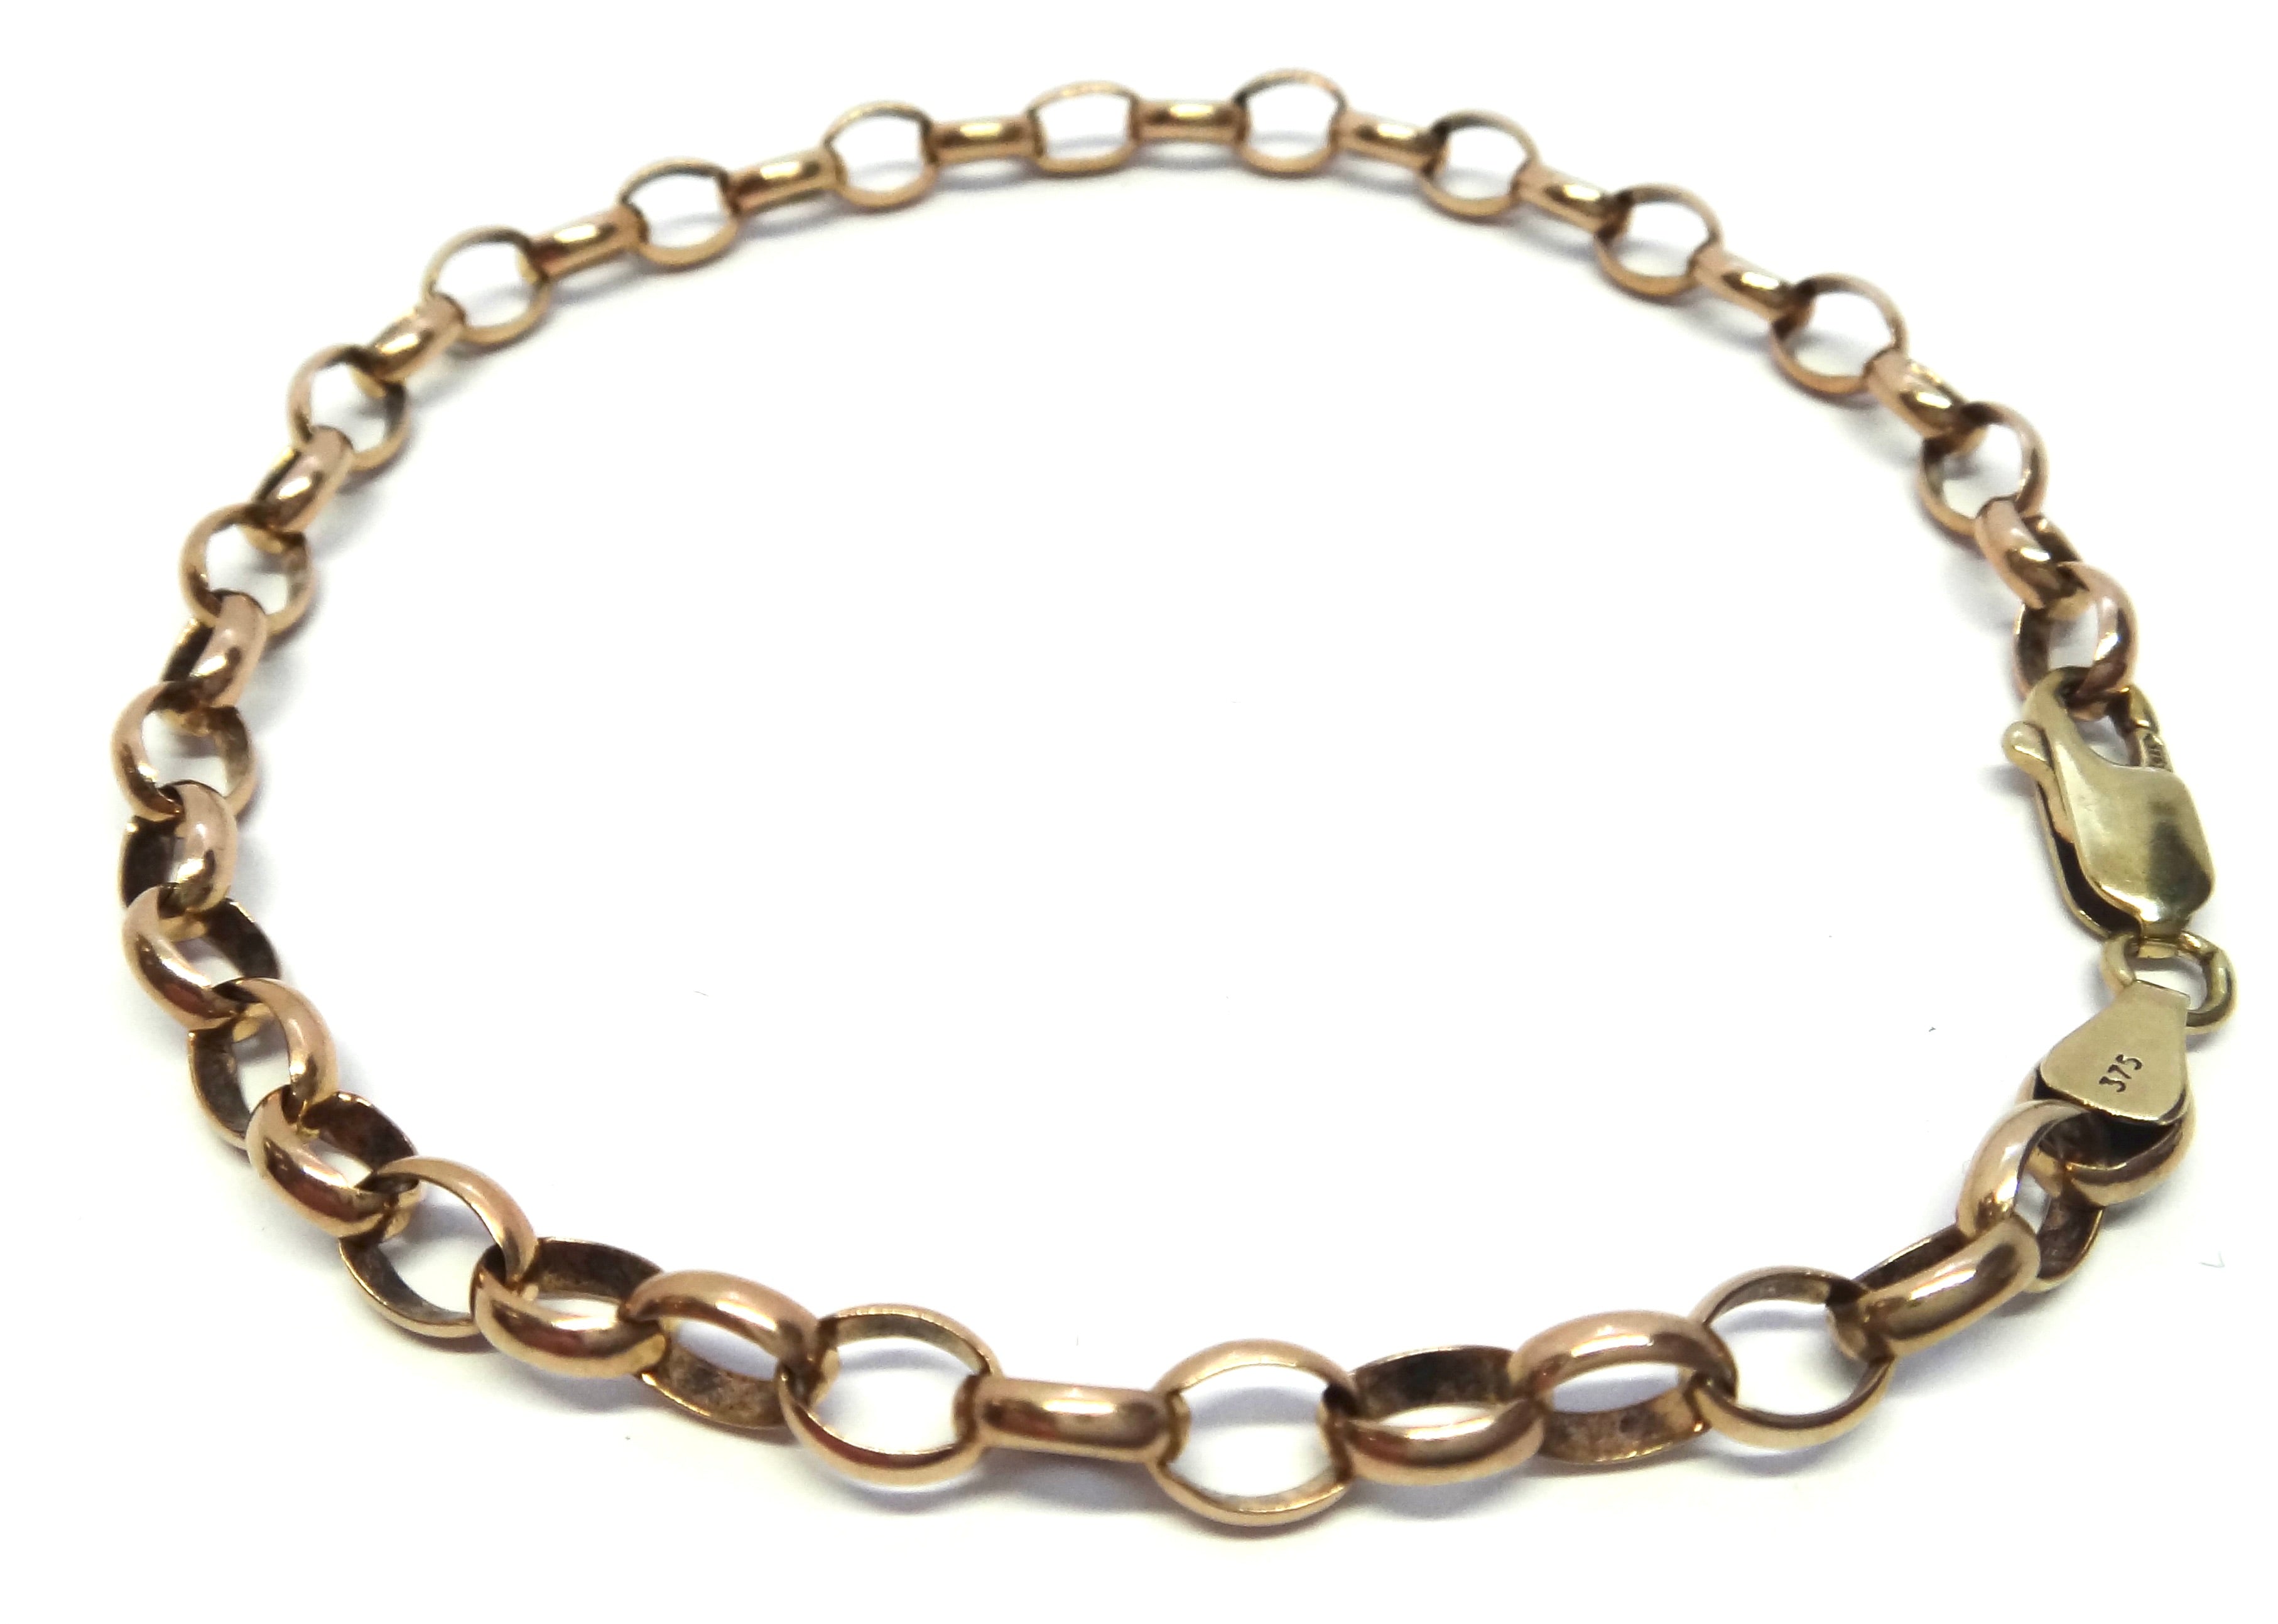 9ct Rose GOLD Belcher Link Bracelet